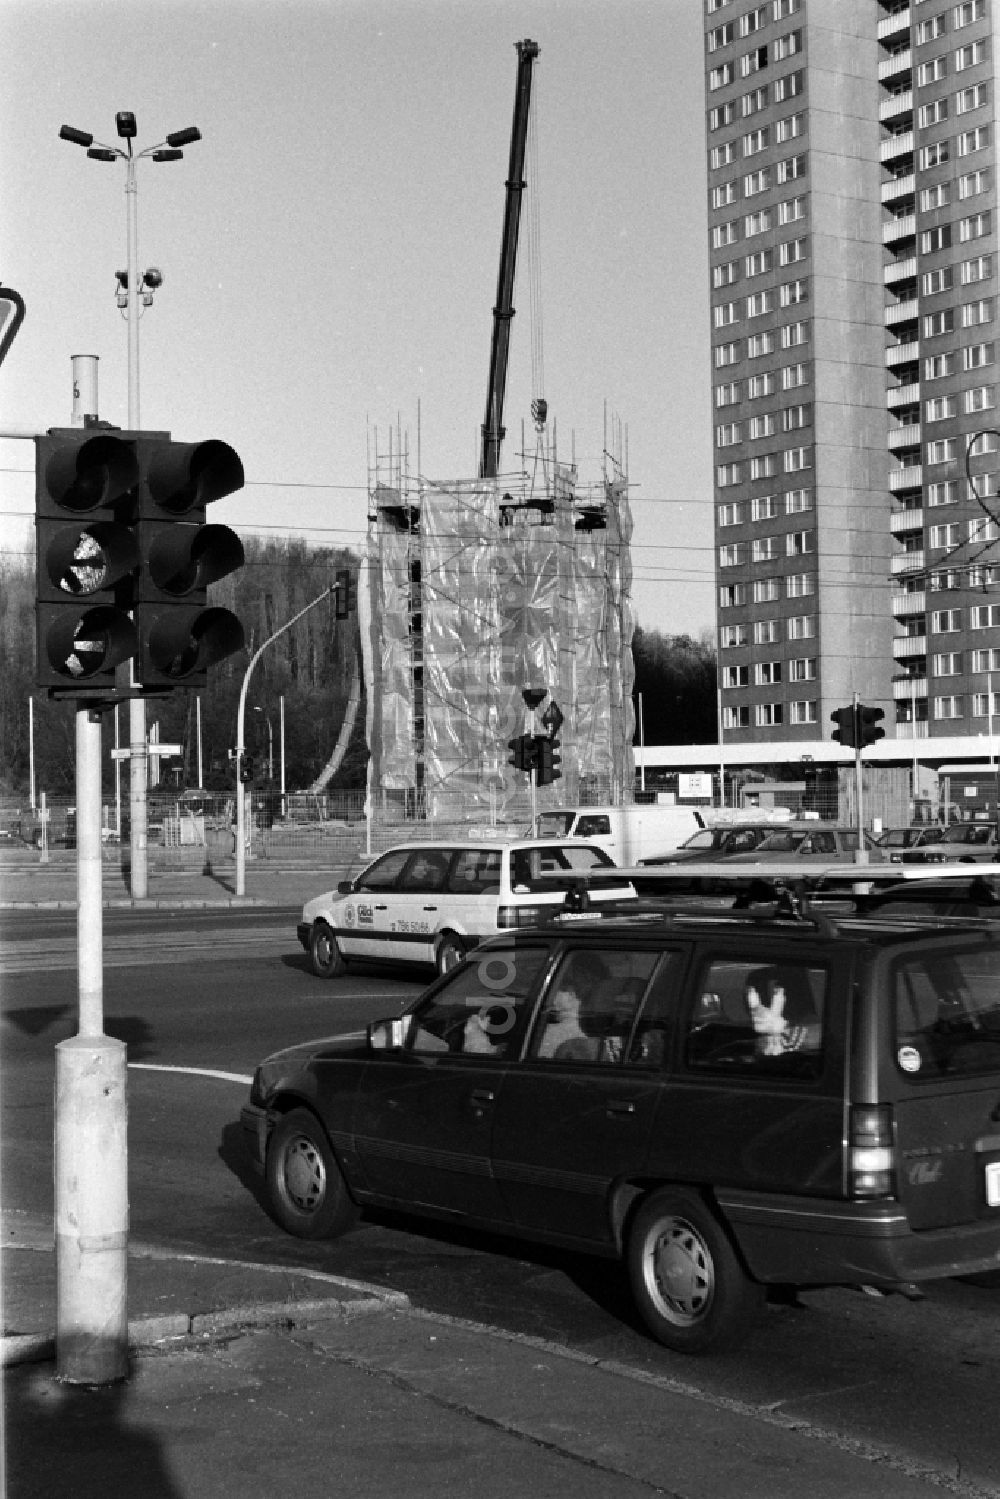 DDR-Fotoarchiv: Berlin - Abriß Lenindenkmal auf dem Leninplatz in Berlin - Friedrichshain, der ehemaligen Hauptstadt der DDR, Deutsche Demokratische Republik